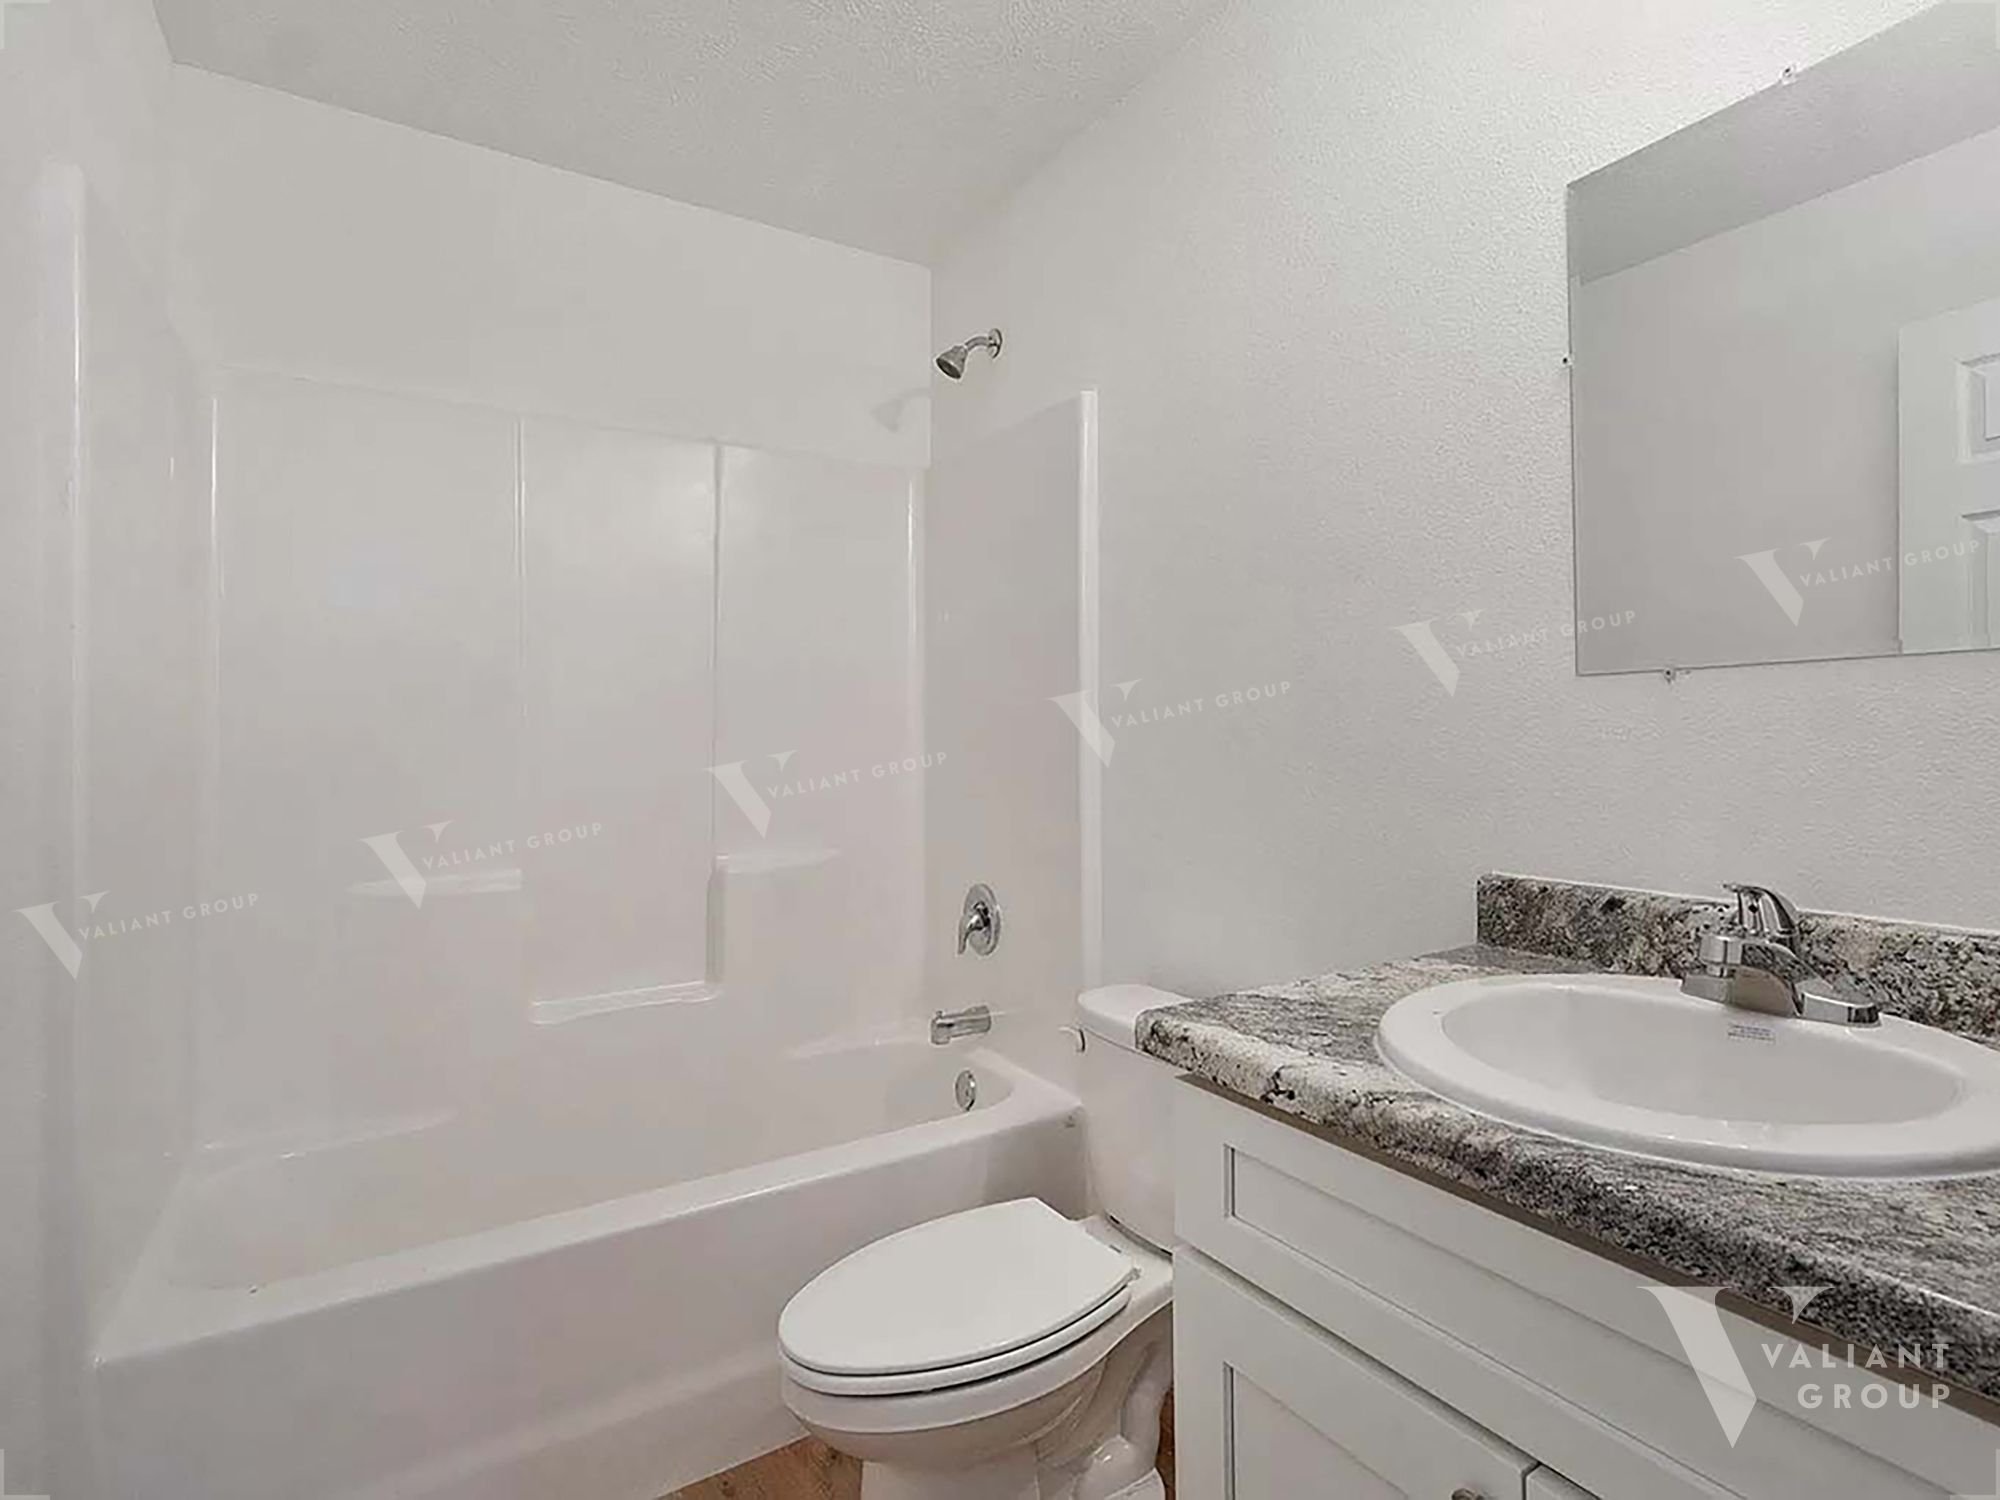 Rental-Duplex-Springfield-MO-1618-W-Scott-St-Unit-B- bathroom sink.jpg